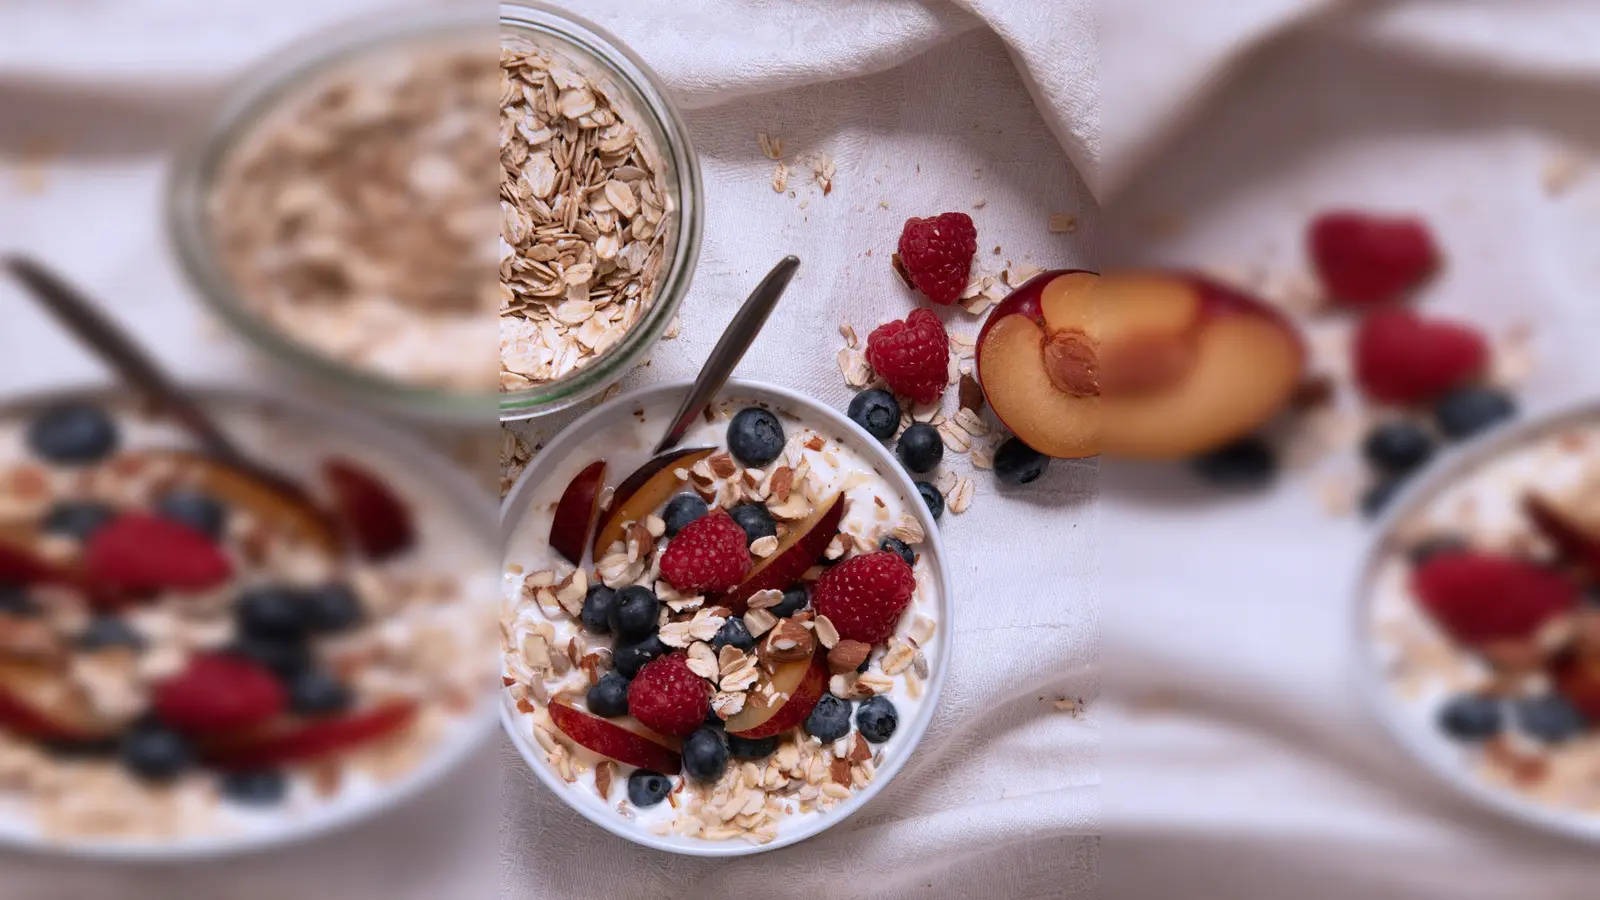 Ein gesundes Frühstücksmüsli lässt sich einfach aus Naturjoghurt, Haferflocken, Sonnenblumenkernen und Mandeln herstellen. Dazu: eine Hand voll Obst der Saison. (Foto: Anna Hirte/dpa-tmn)